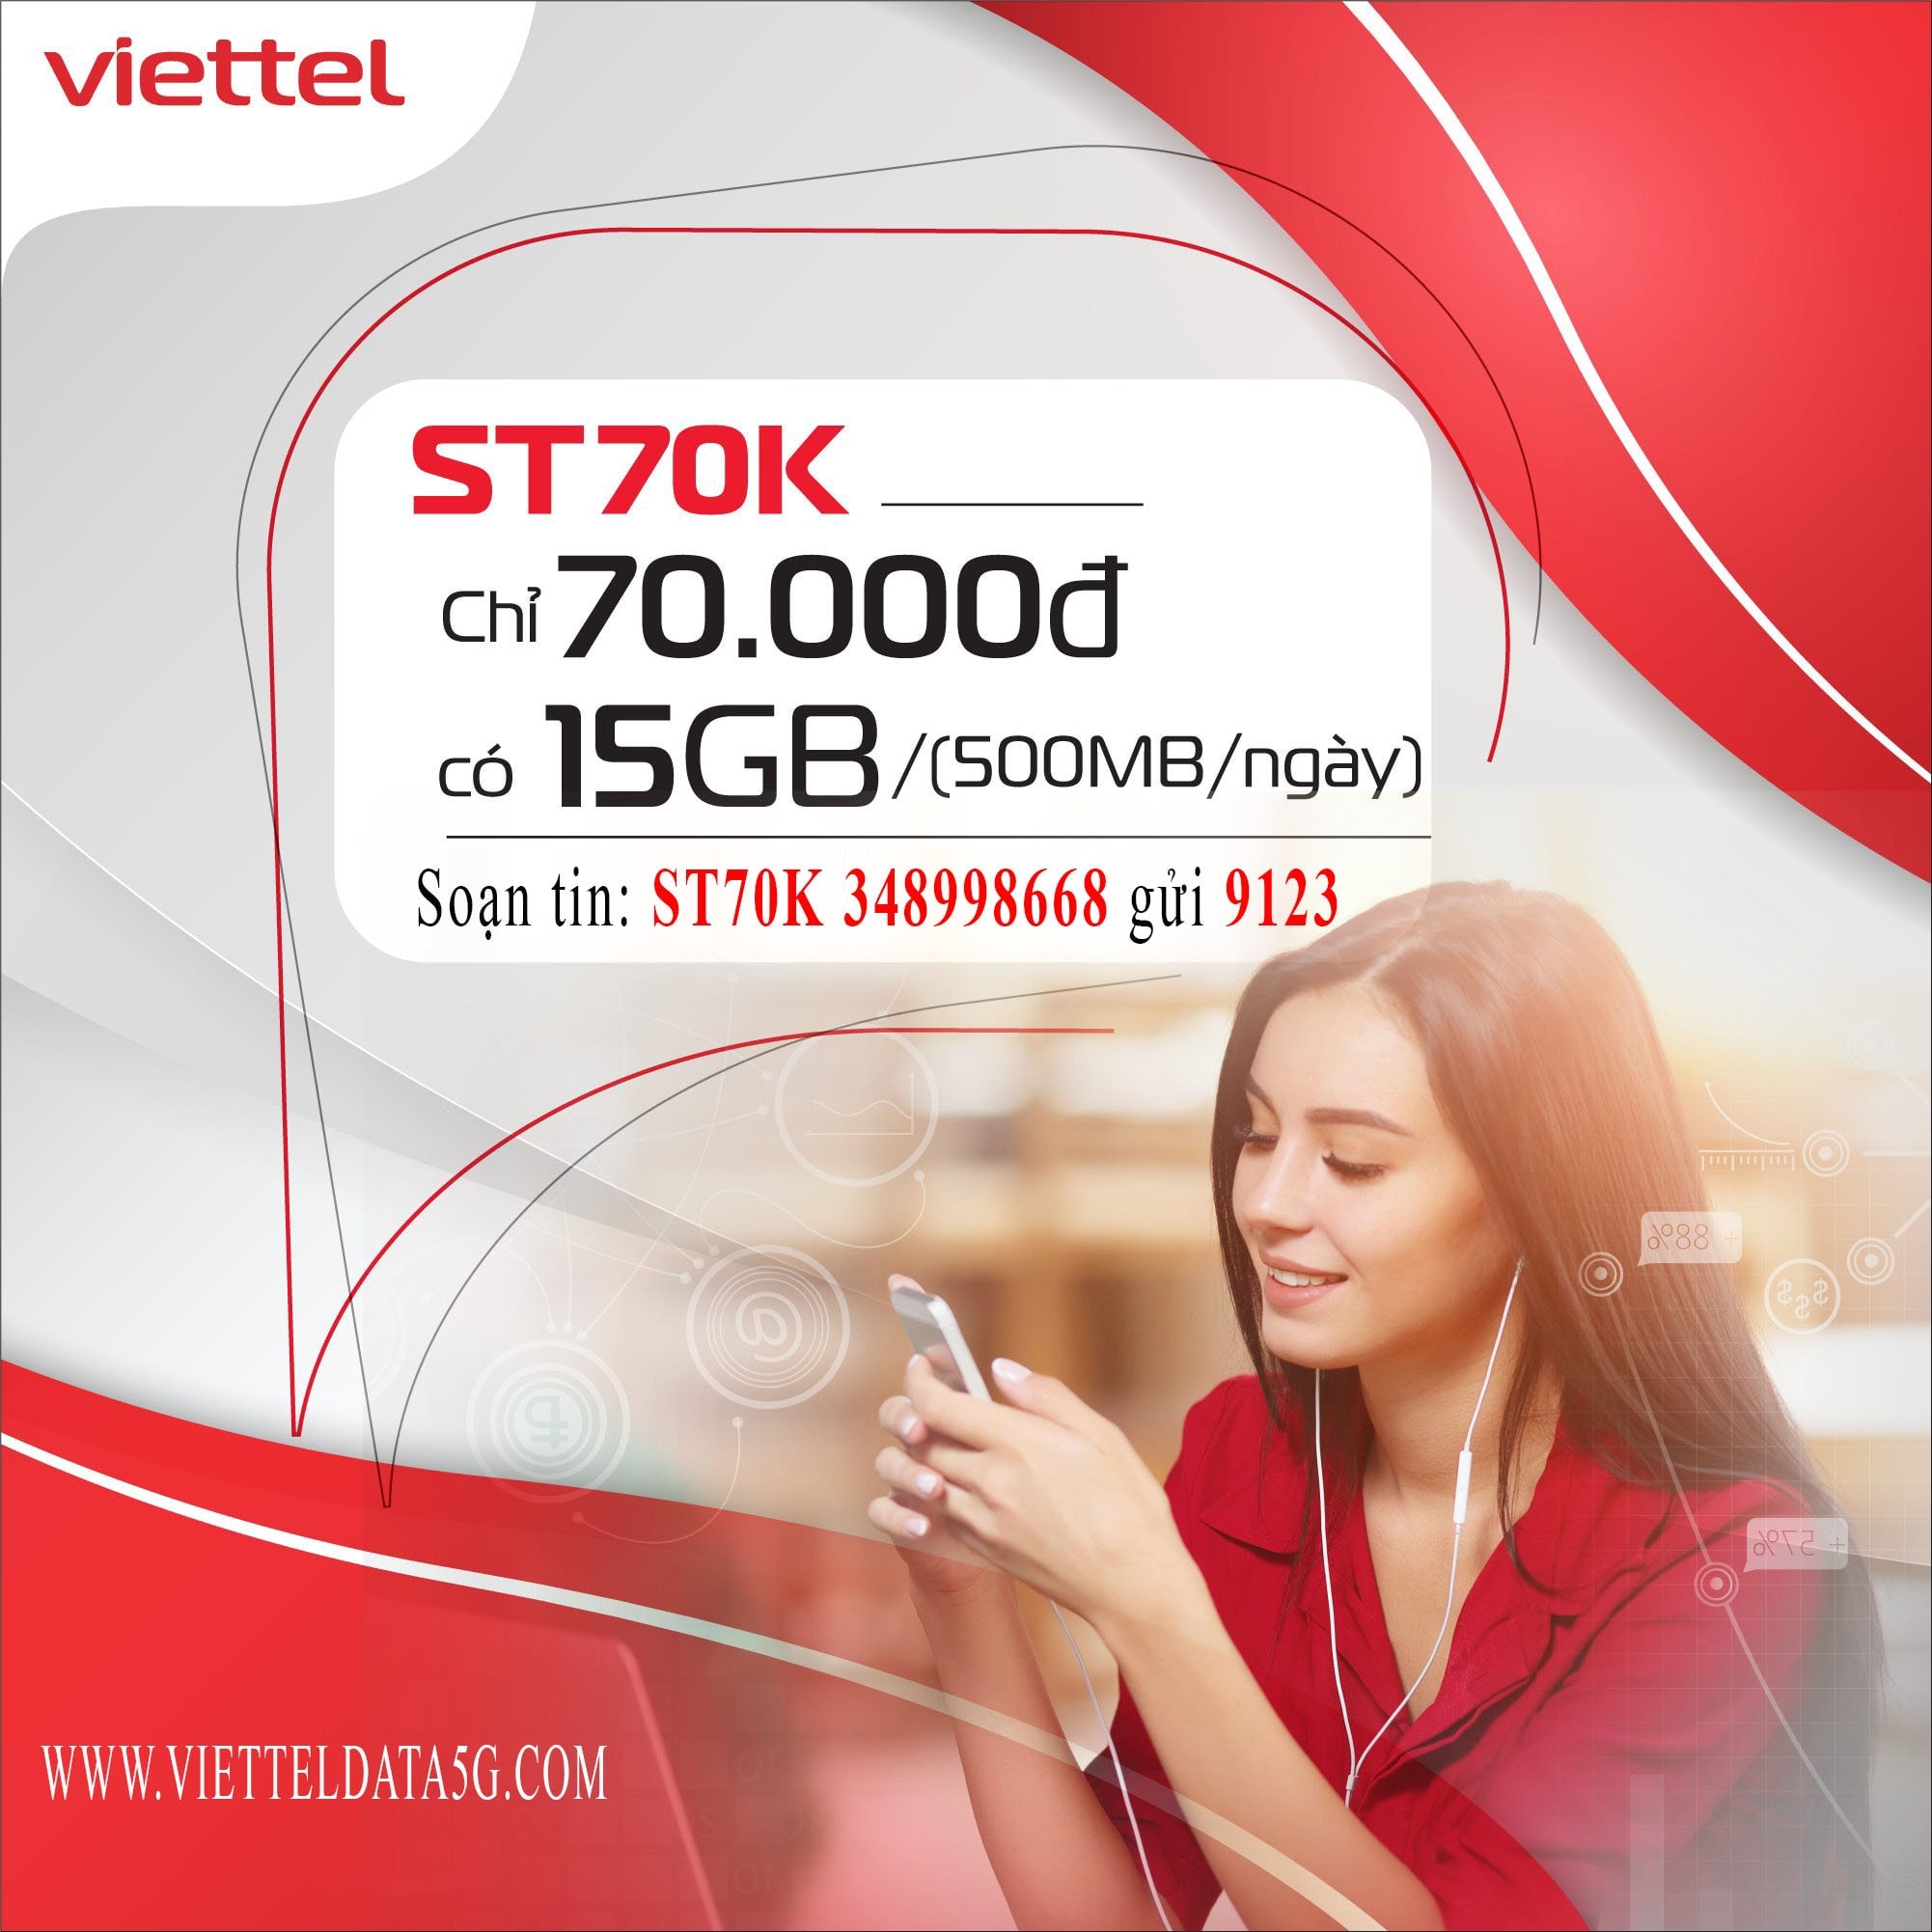 Đăng ký gói cước ST70K Viettel trên website: https://vietteldata5g.com/